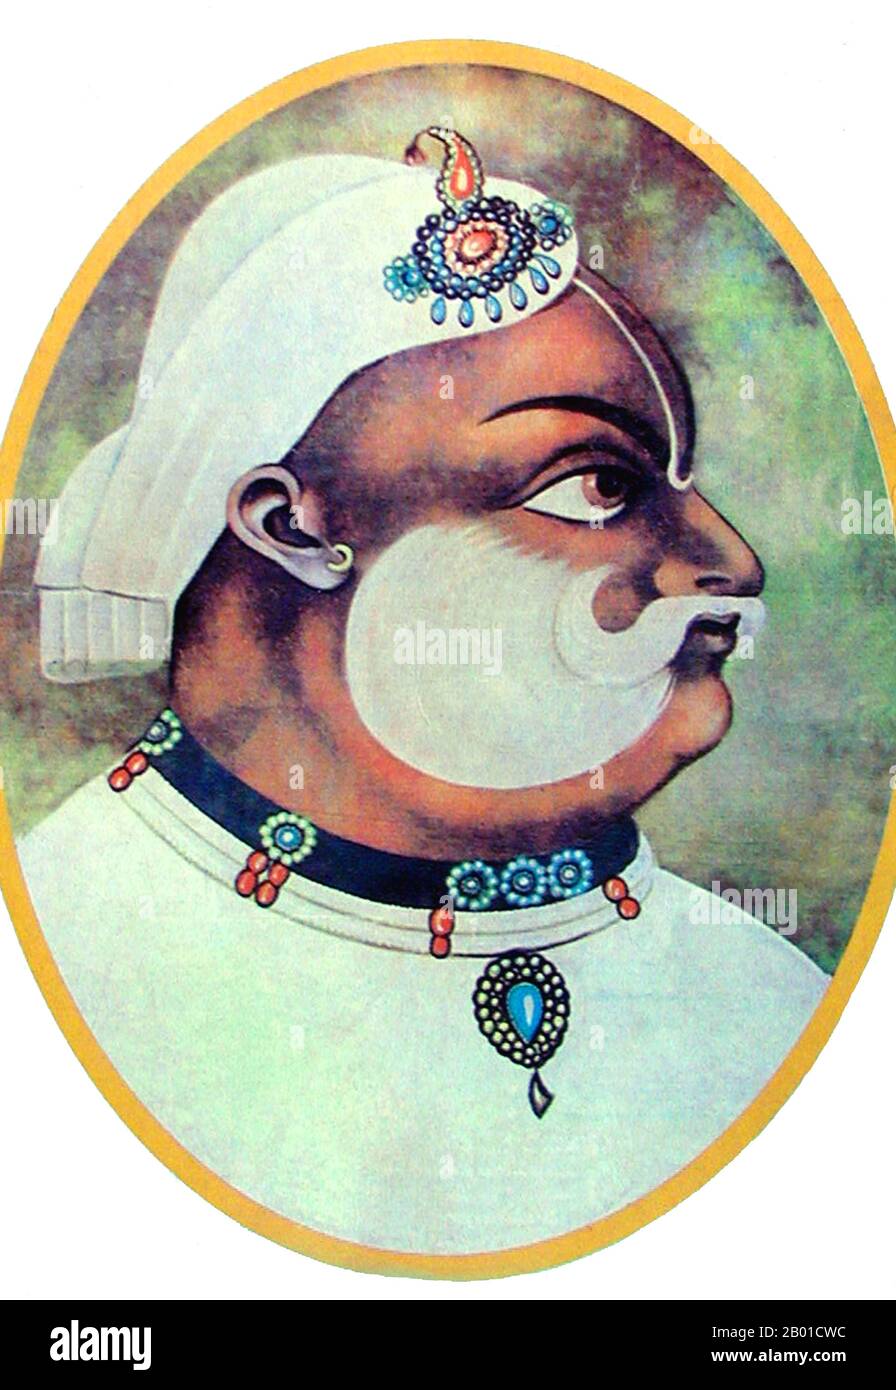 India: Maharaja Suraj Mal (13 febbraio 1707 - 25 dicembre 1763), governatore di Bharatpur nel Rajasthan (r. 1755-1763). Ritratto in miniatura, 1763. Maharaja Suraj Mal è stato descritto da uno storico contemporaneo come "il Platone del popolo Jat" e da uno scrittore moderno come "il Jat Ulysses", a causa della sua sagacia politica, del suo intelletto costante e della sua visione chiara. È associato all'ascesa del potere di Jat, per il suo amore per la letteratura e per le sue conquiste militari e diplomatiche. Foto Stock